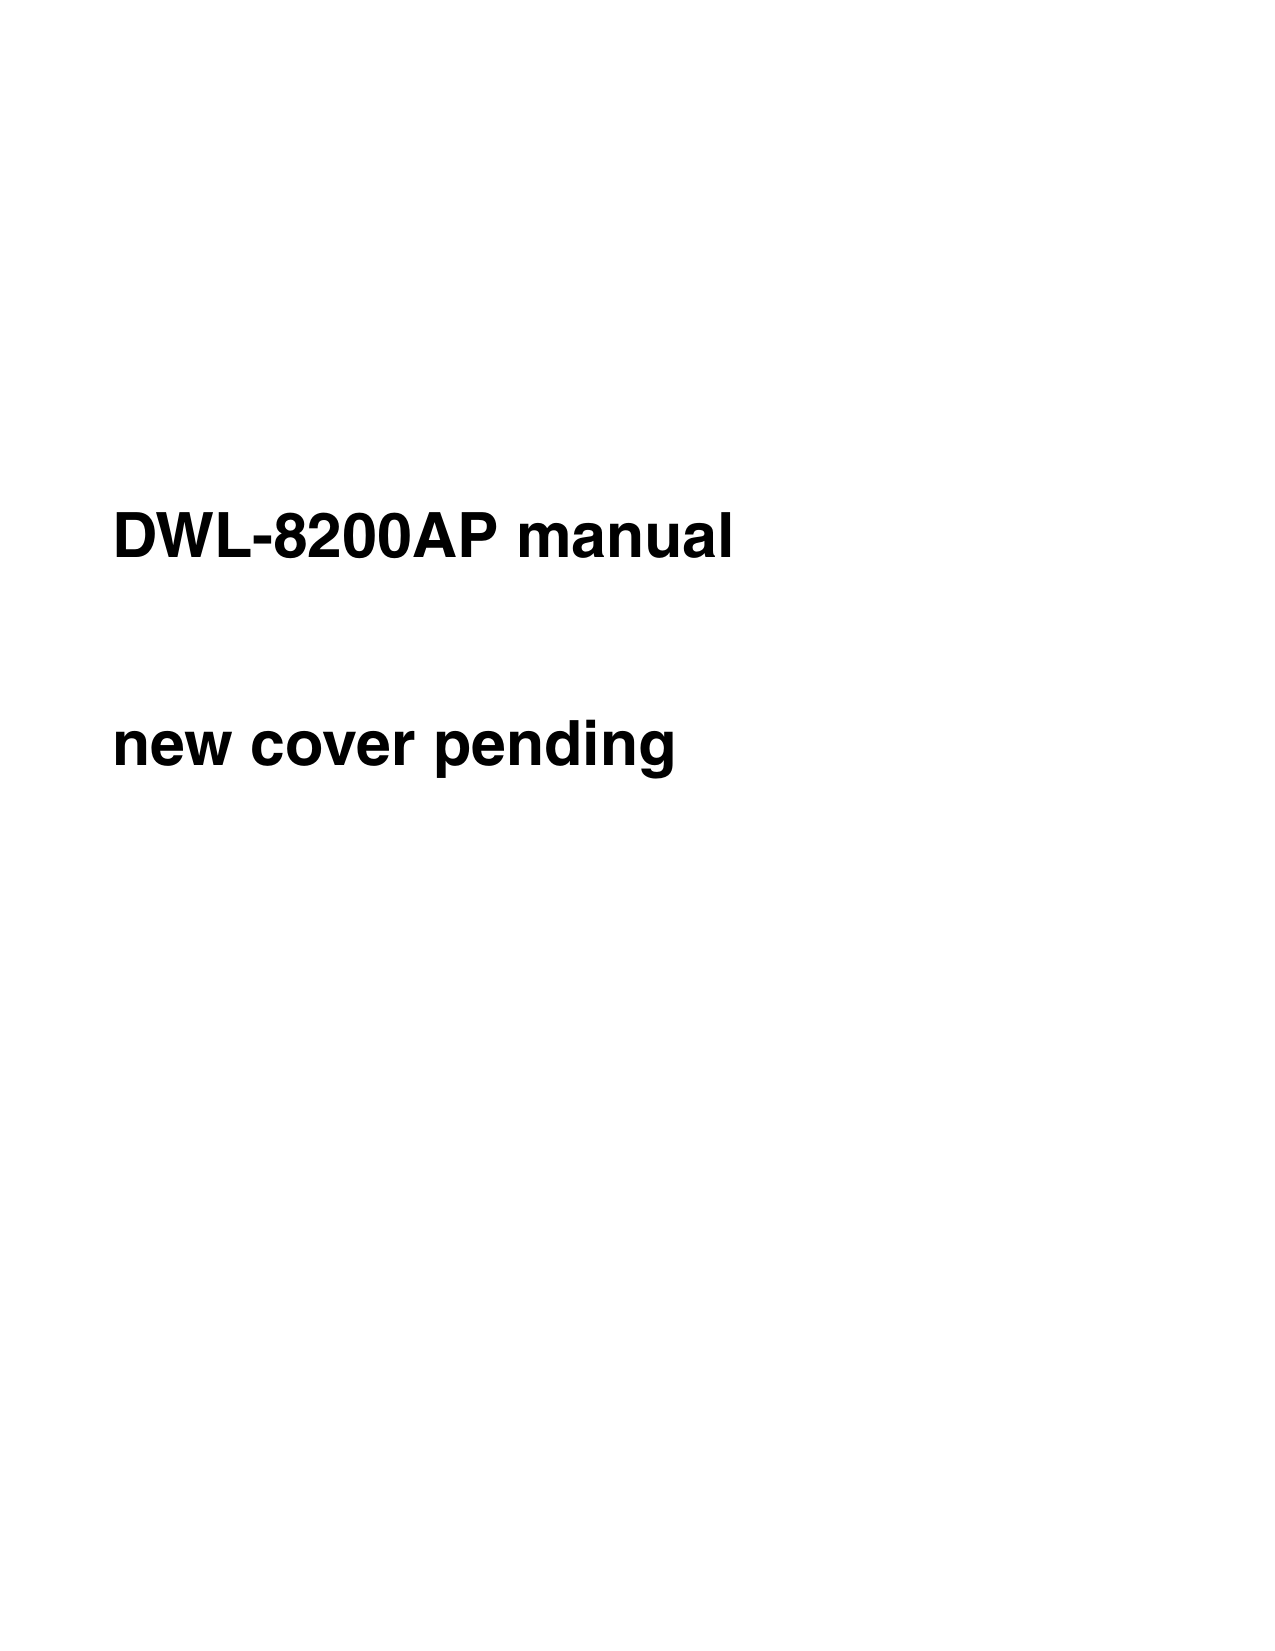 DWL-8200AP manualnew cover pending